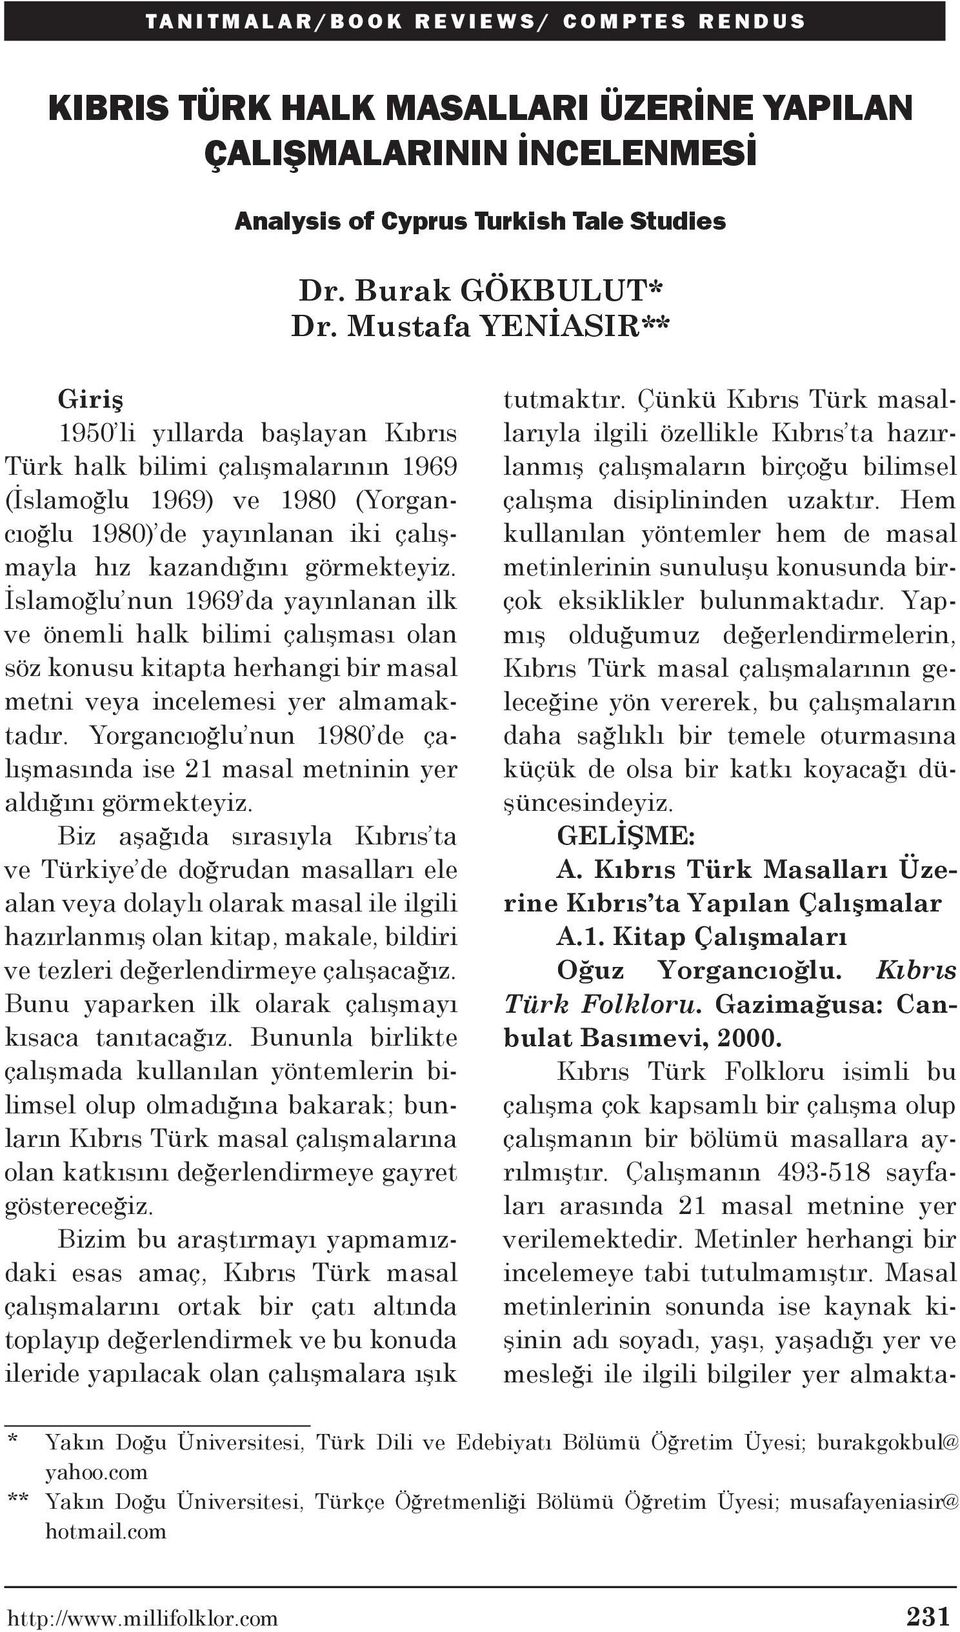 İslamoğlu nun 1969 da yayınlanan ilk ve önemli halk bilimi çalışması olan söz konusu kitapta herhangi bir masal metni veya incelemesi yer almamaktadır.